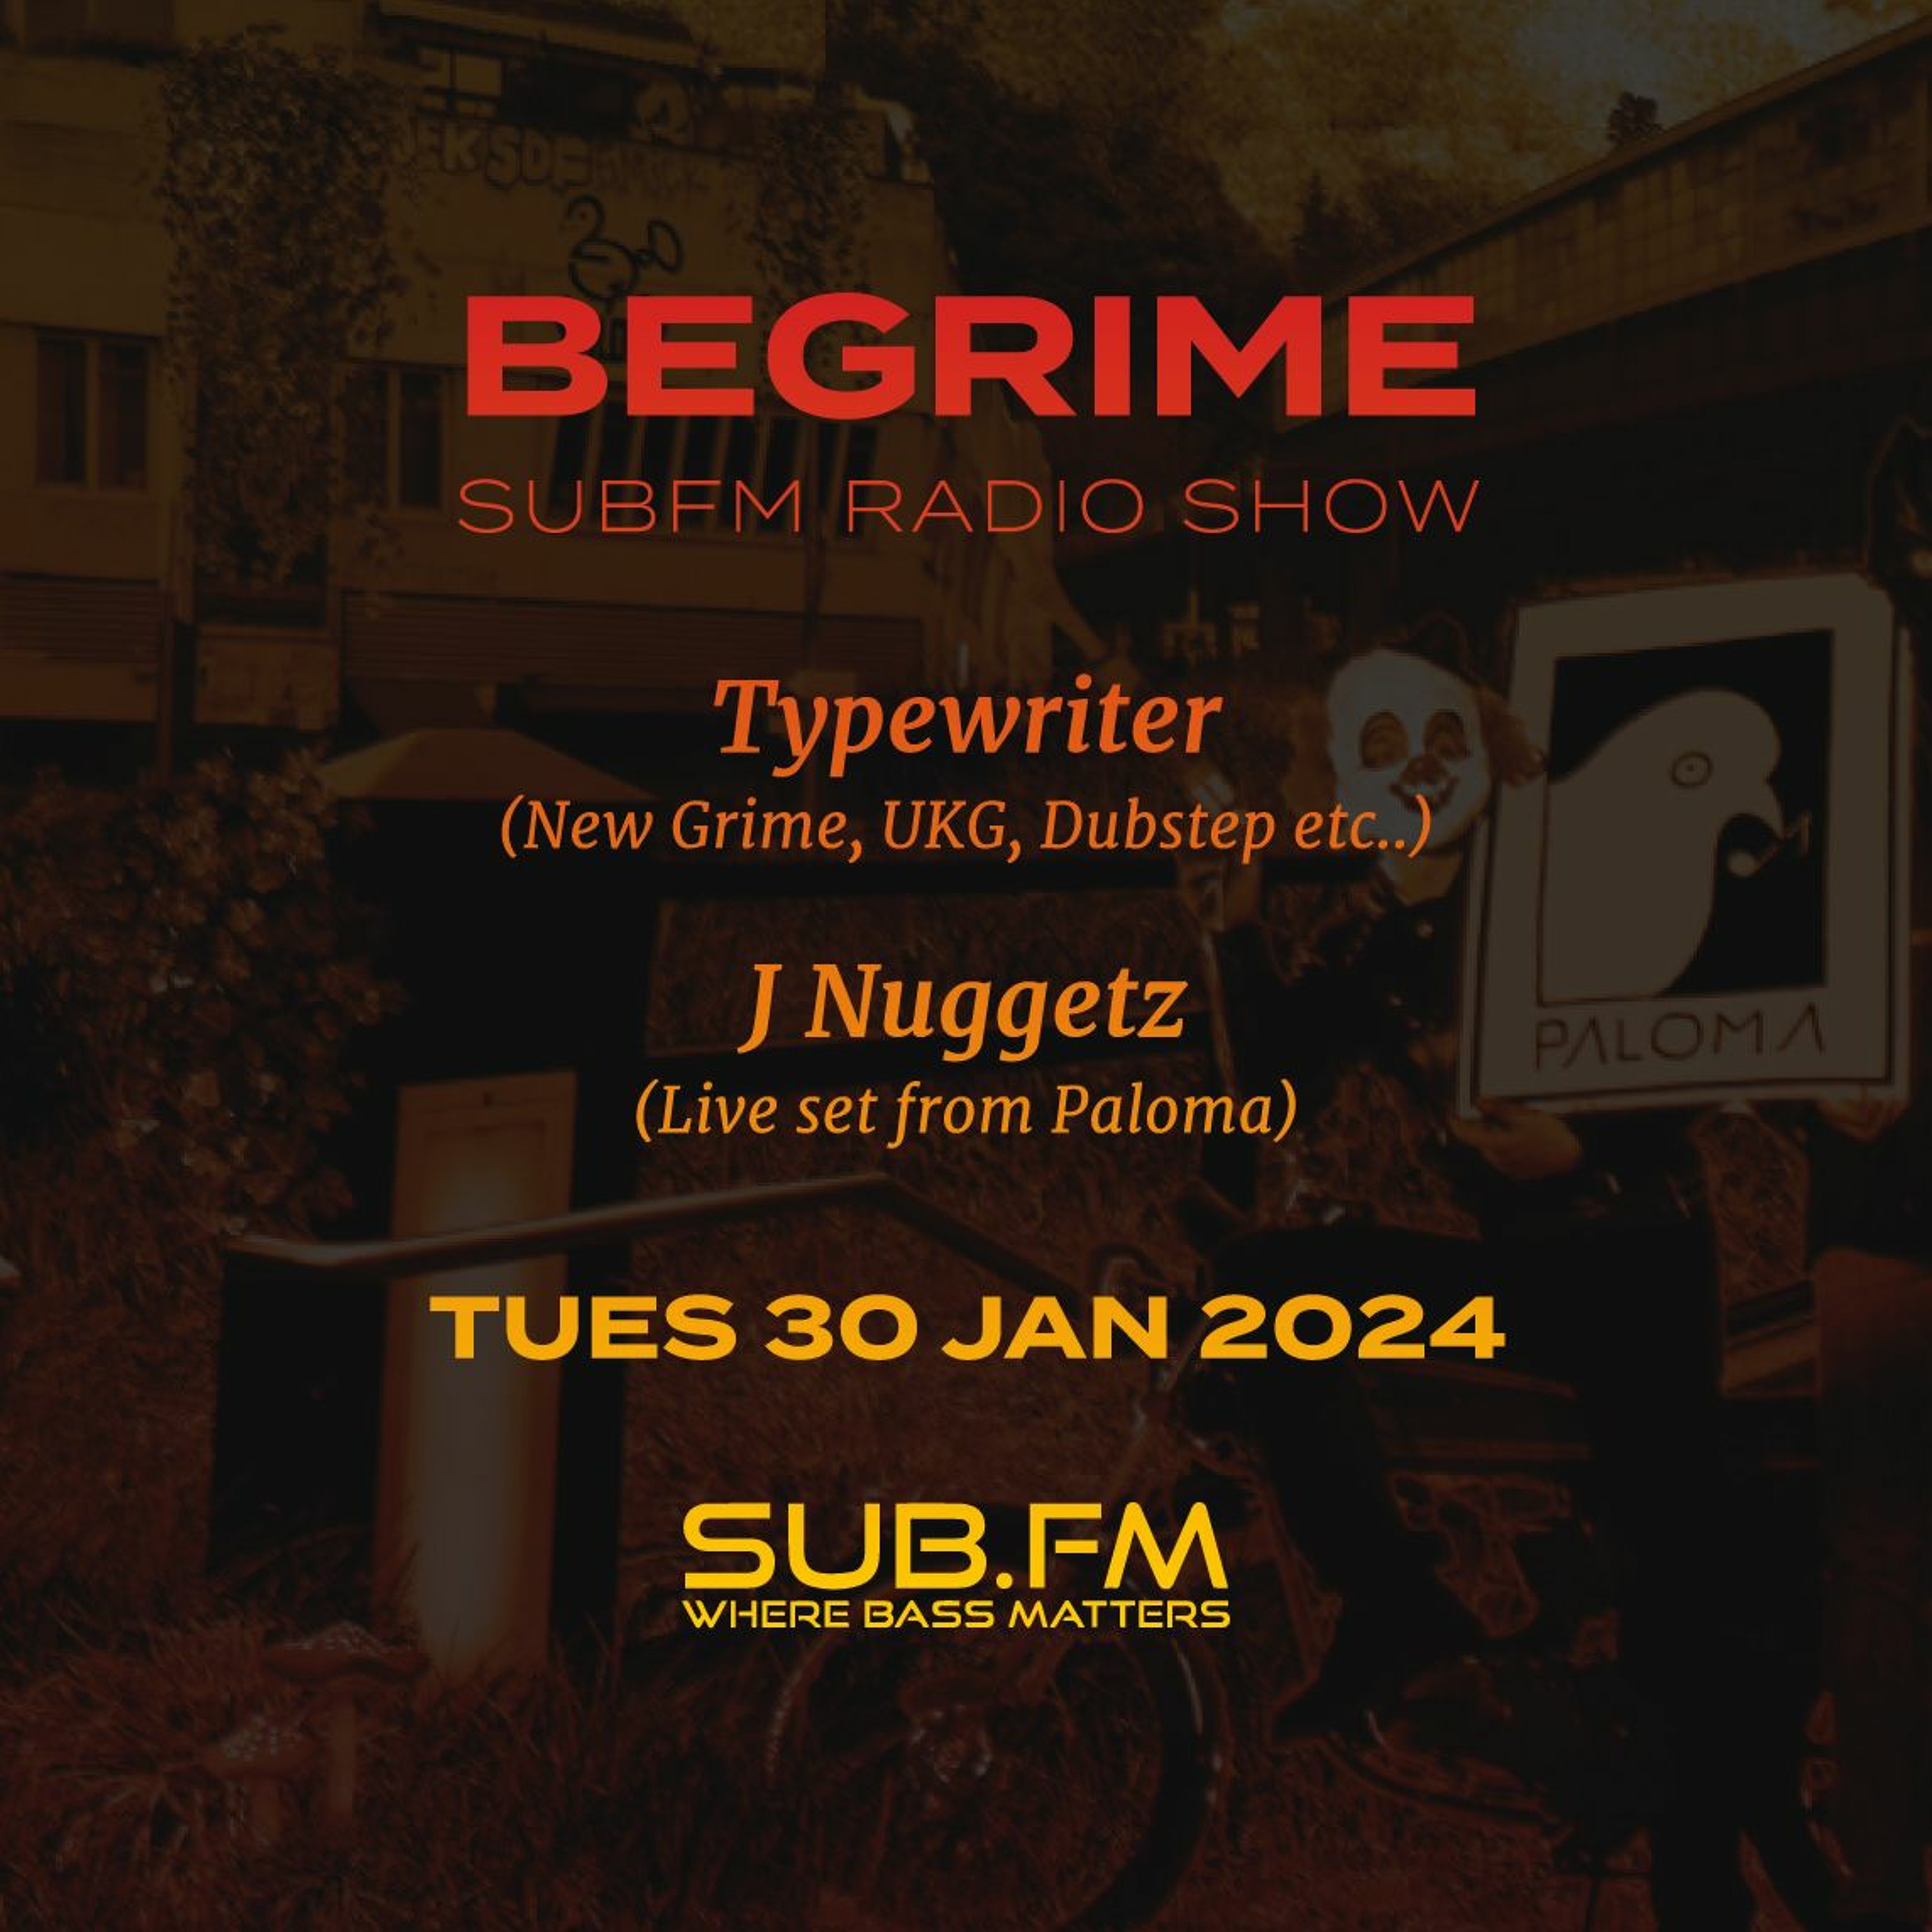 Begrime Typewriter Jnuggetz - 30 Jan 2024